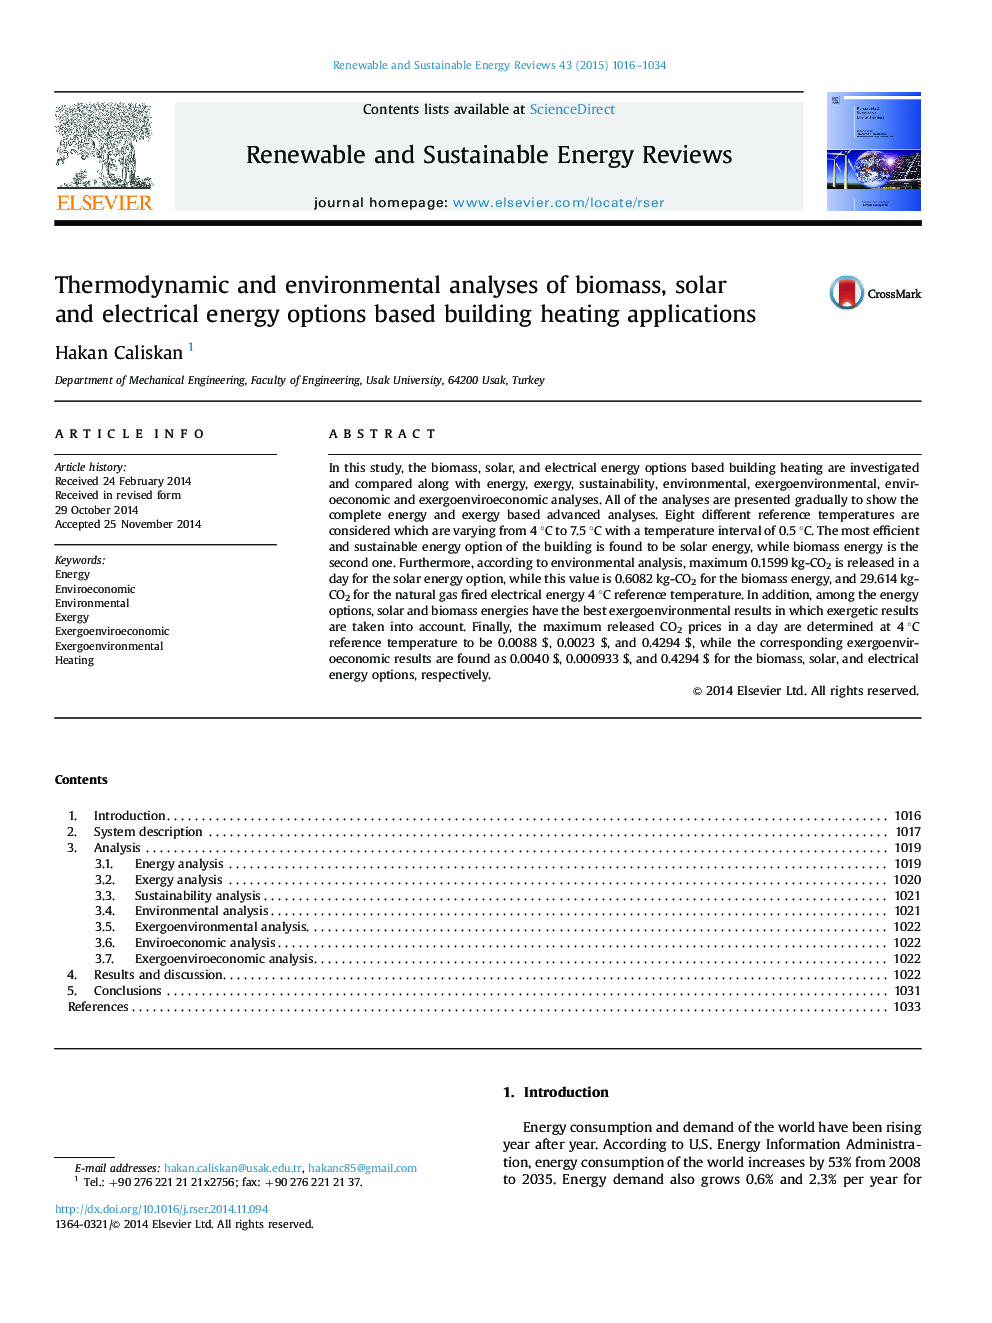 تجزیه و تحلیل ترمودینامیکی و محیط زیست از گزینه های انرژی زیست توده، انرژی خورشیدی و انرژی بر اساس ساختمان های گرمایش ساختمان 